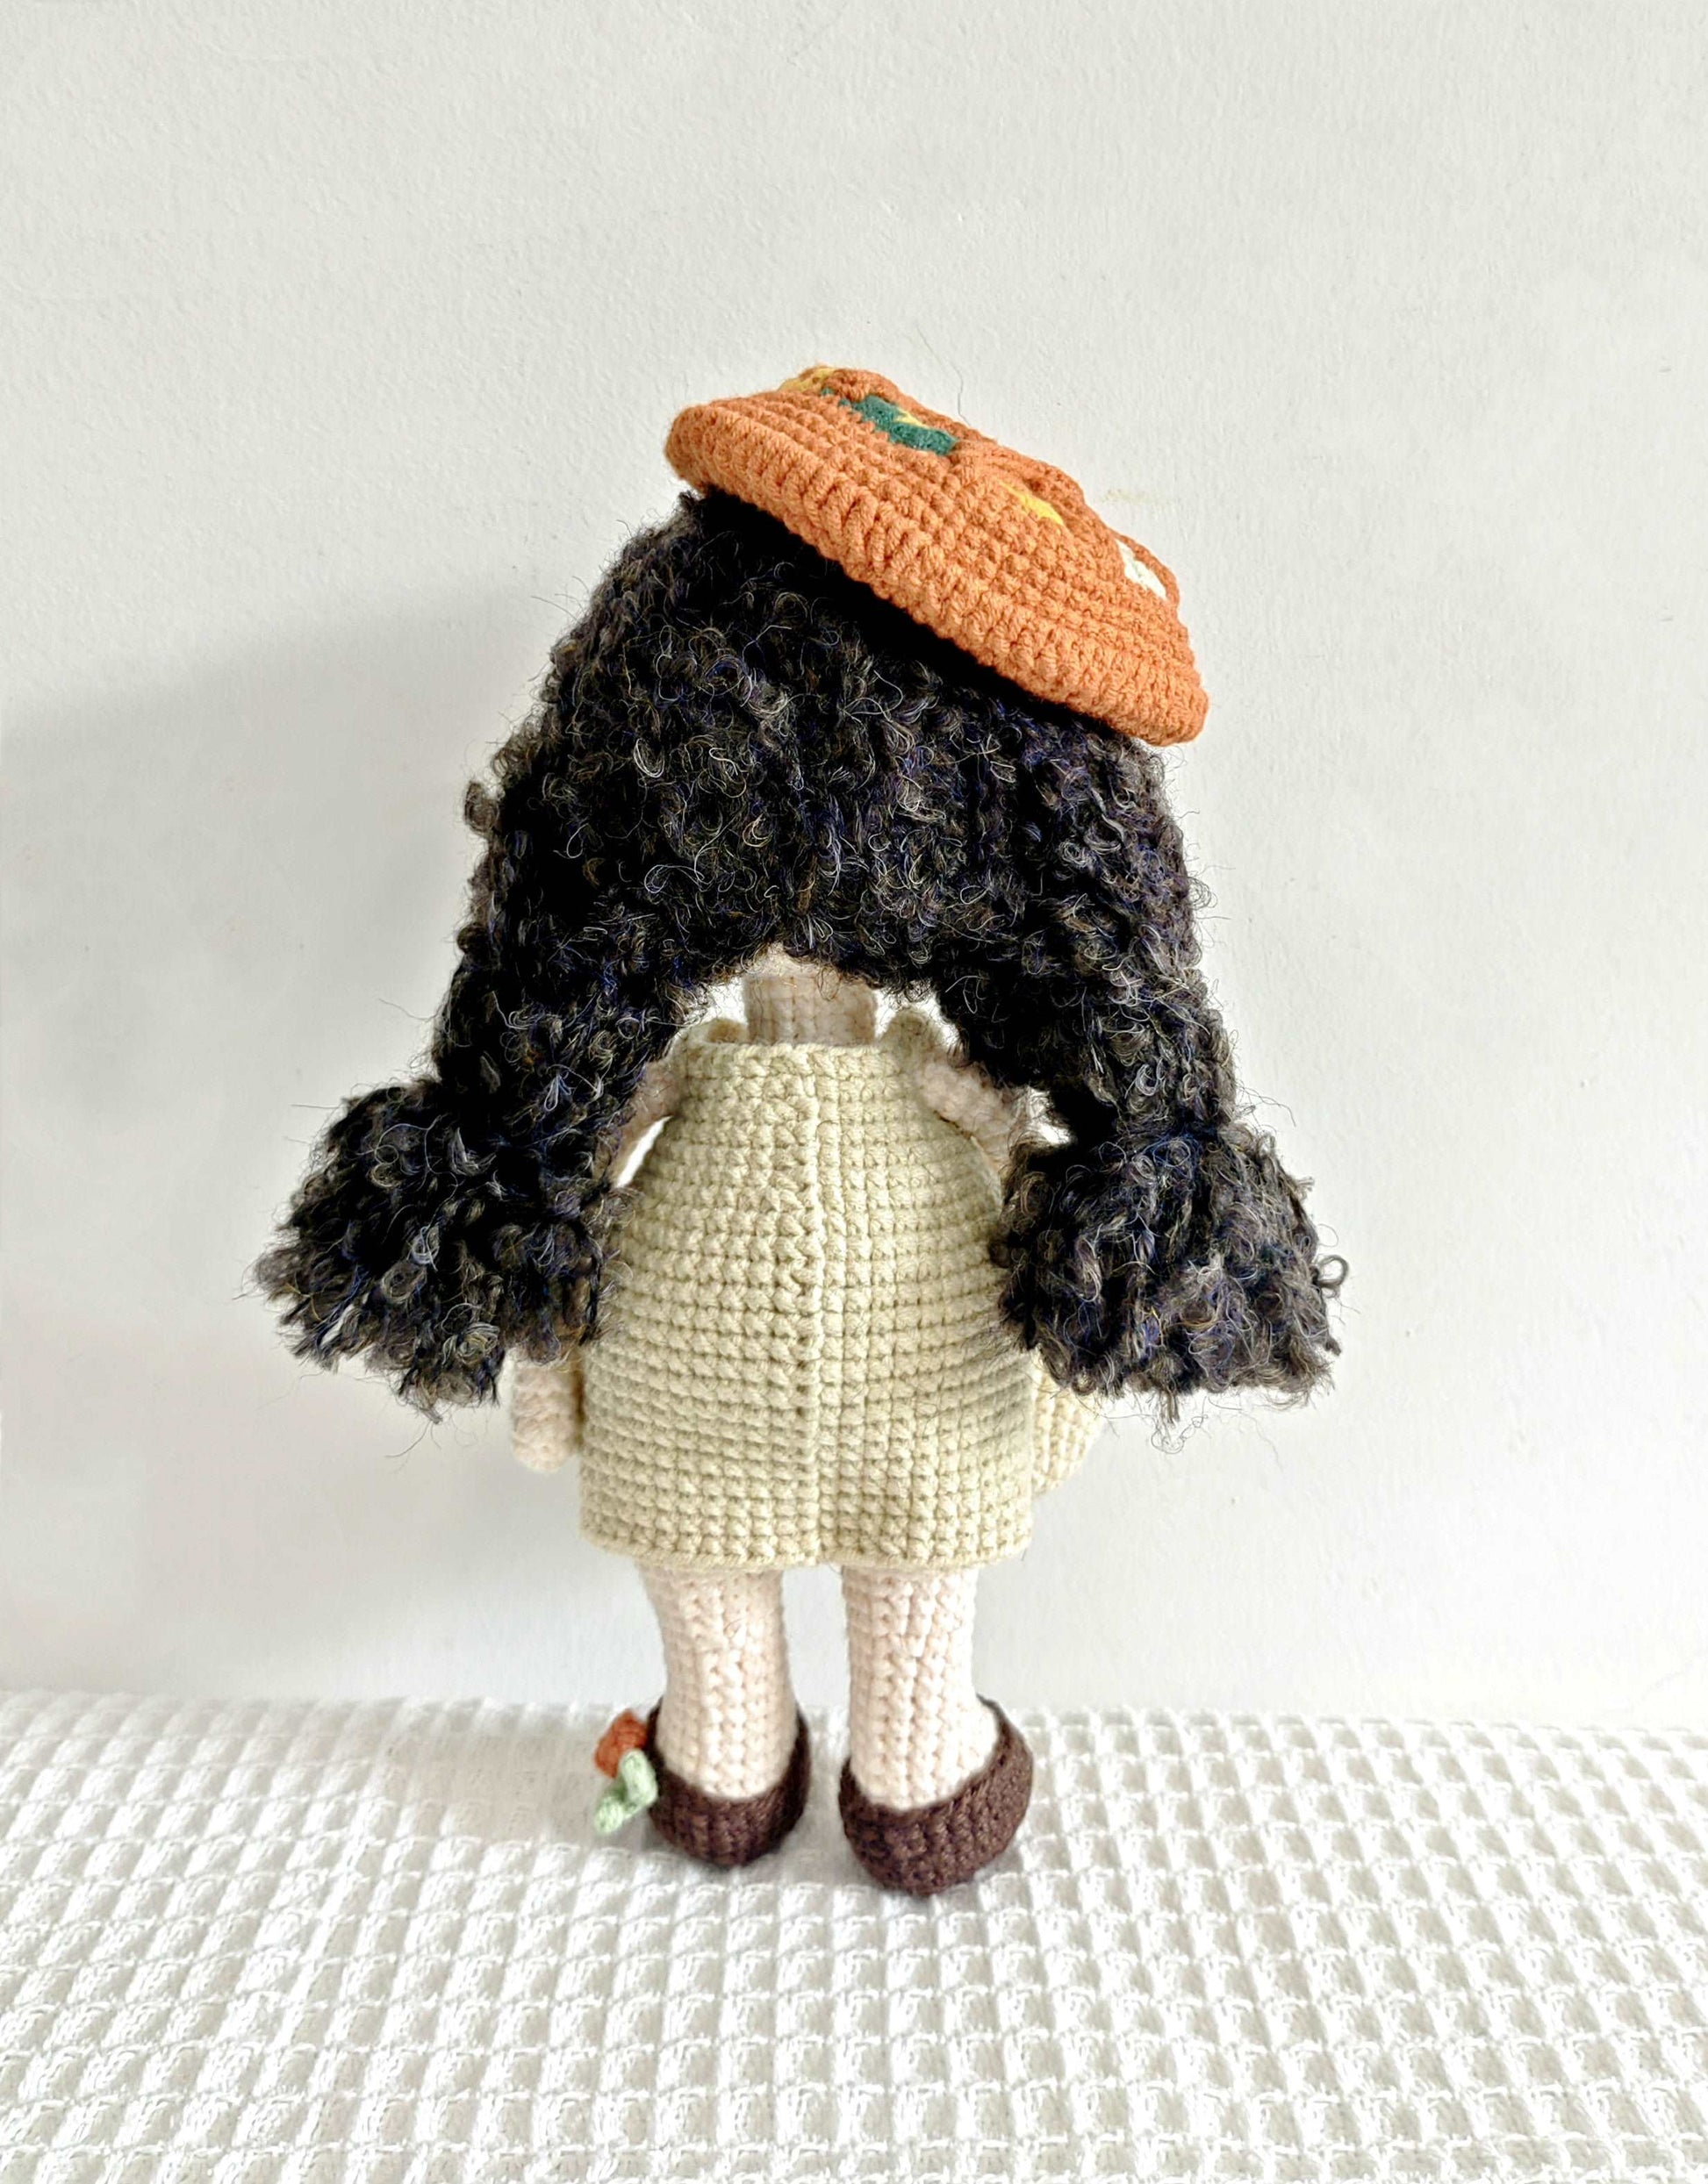 Custom Crocheted Person Figurine for Interior Design